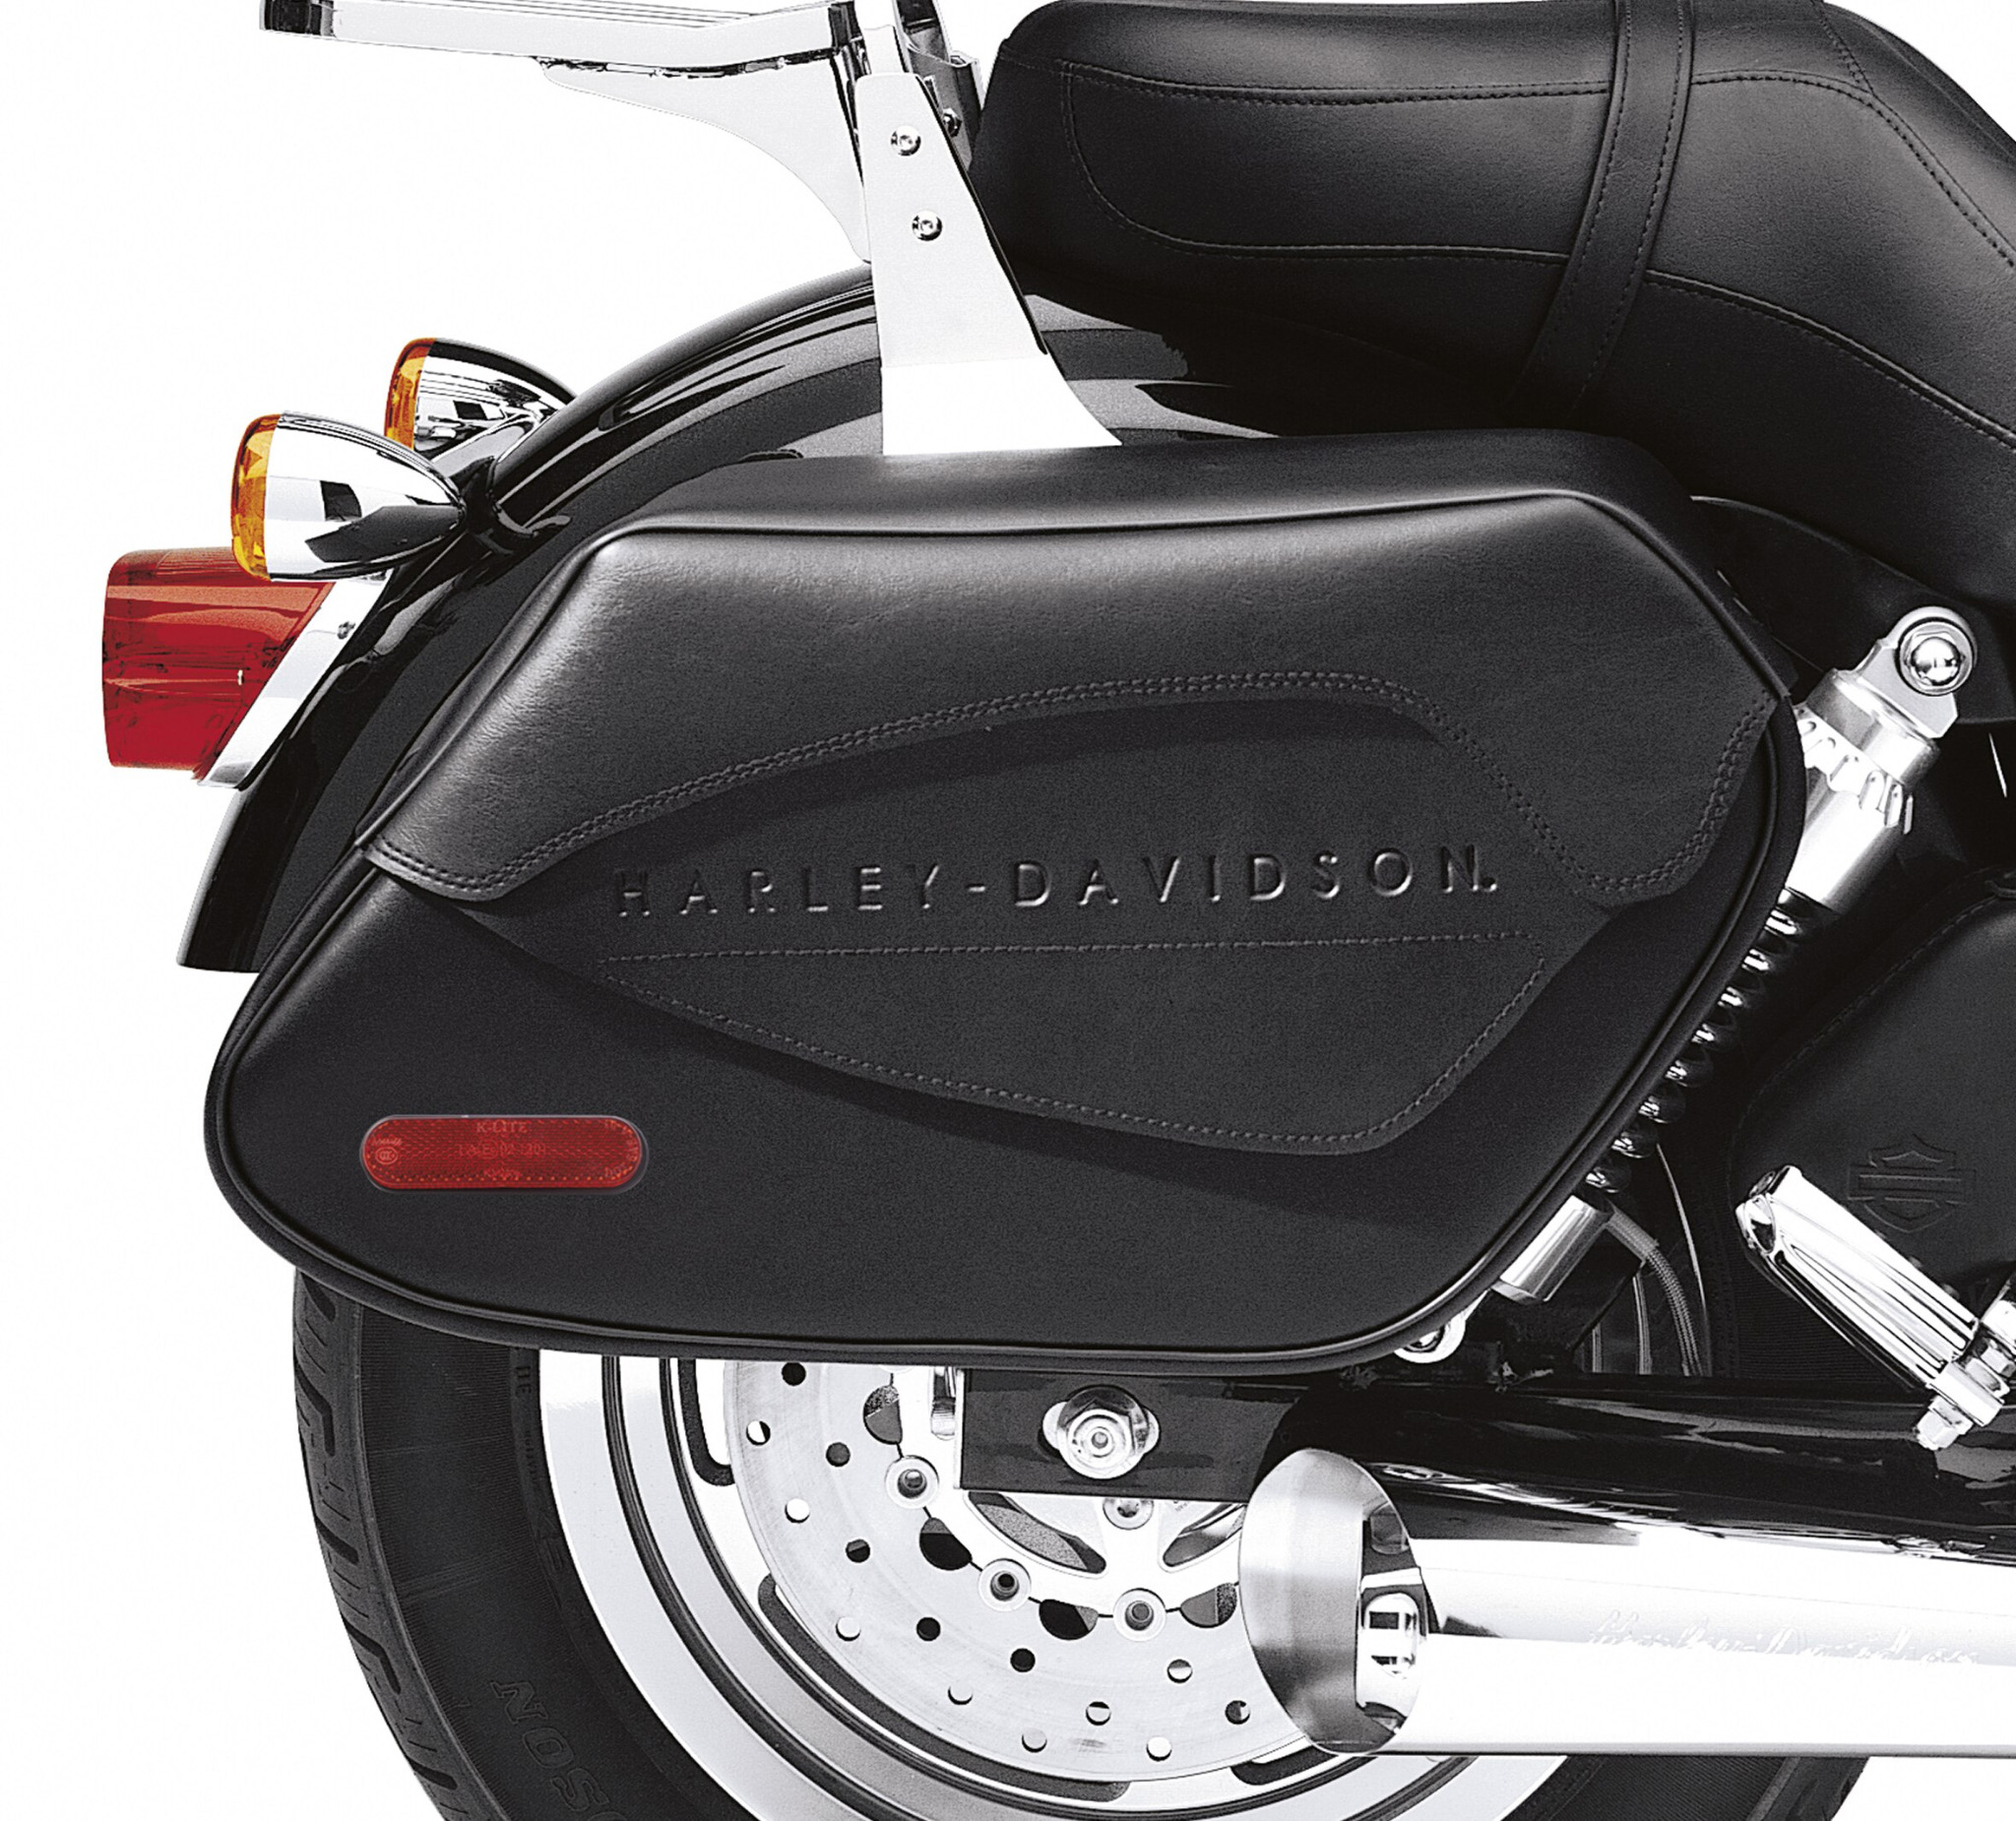 Harley Bike List Below  16 x 11 x 6" Motorcycle Water Resistant  Saddle Bags